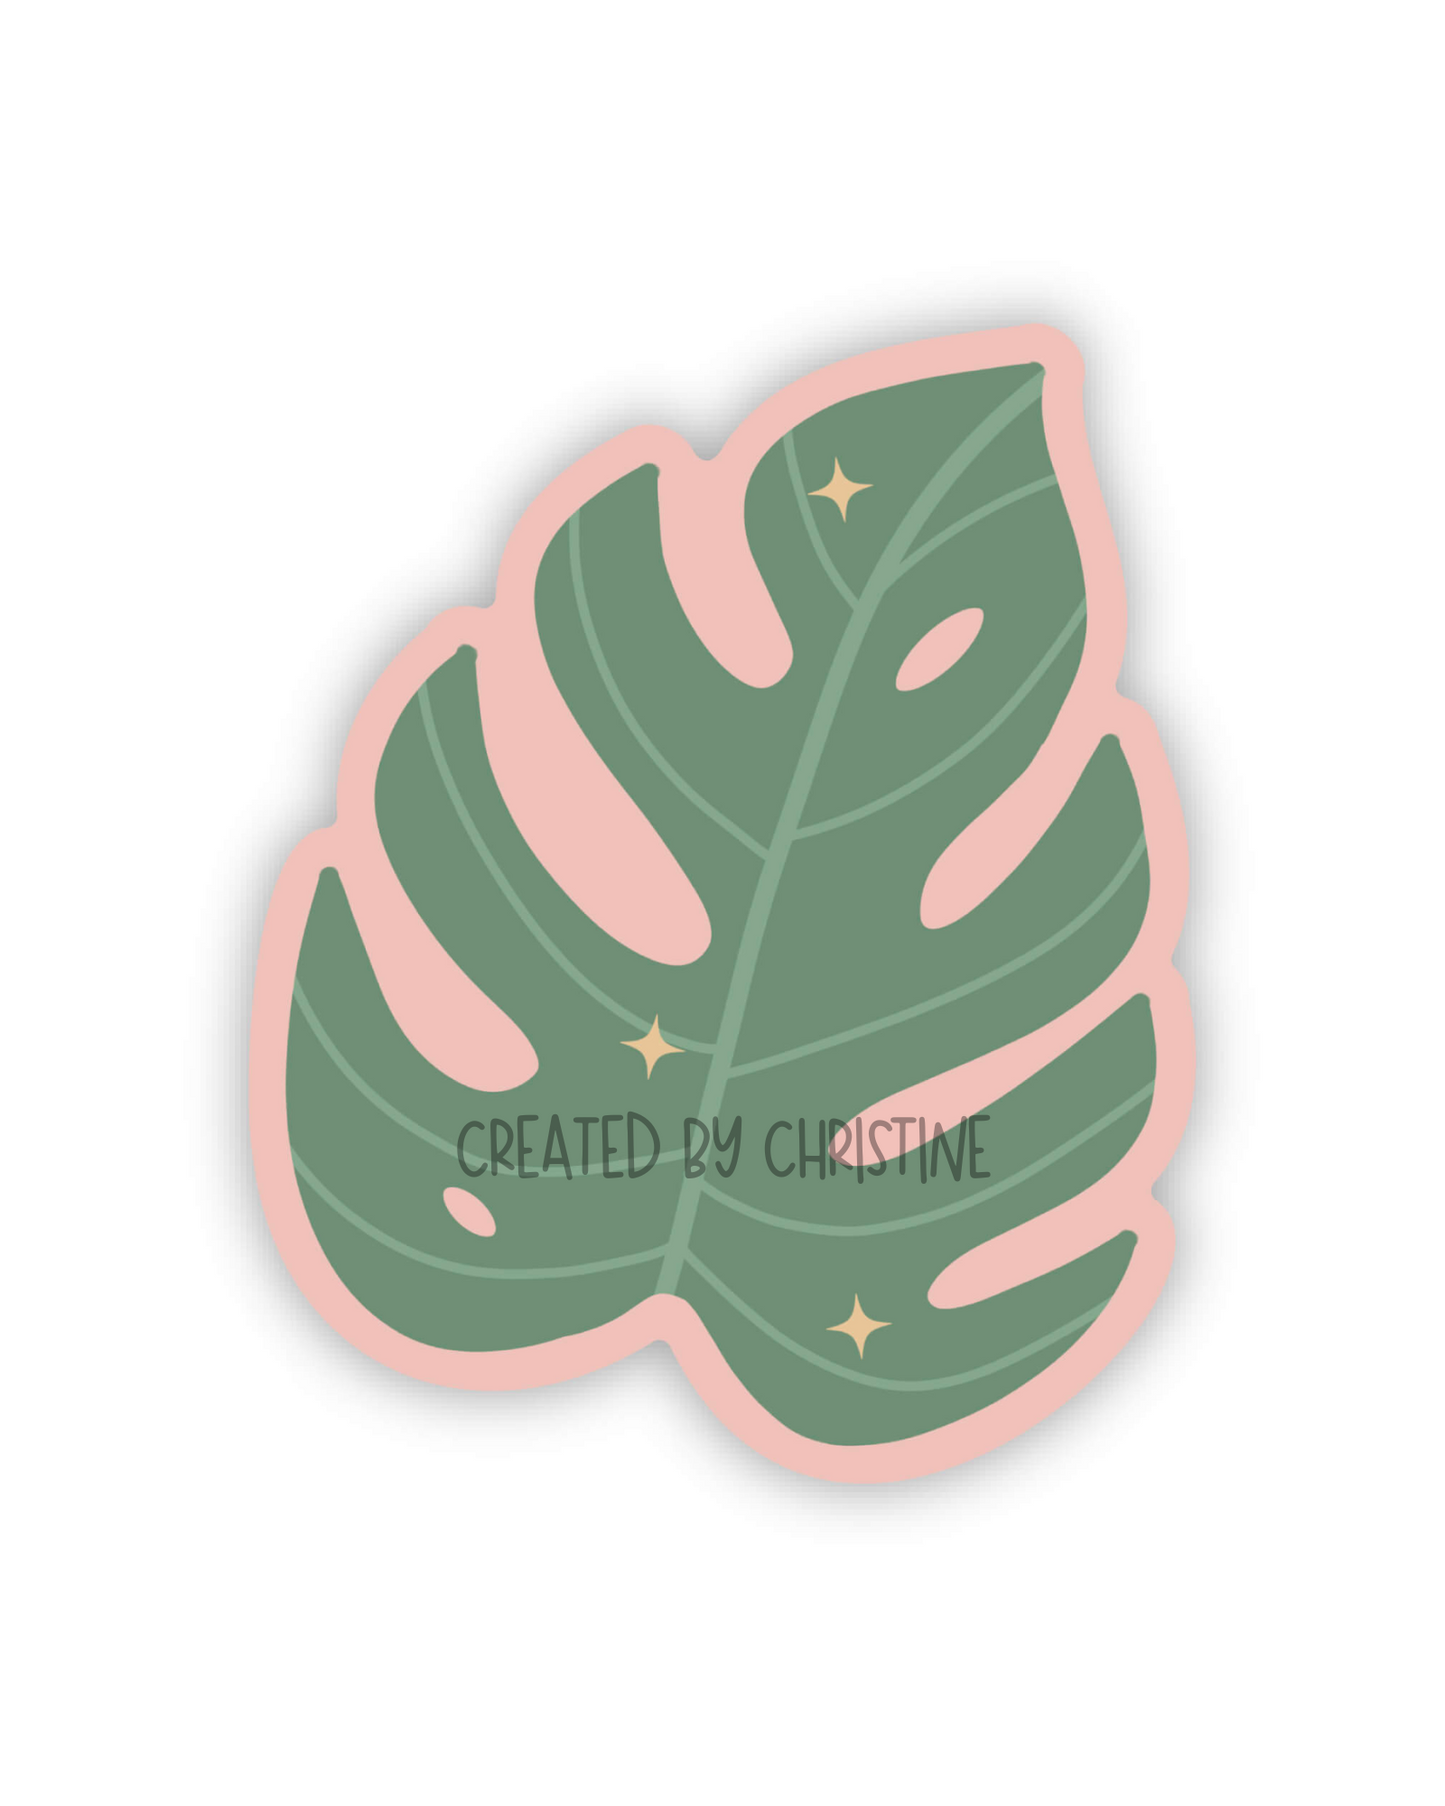 Monstera Leaf Sticker